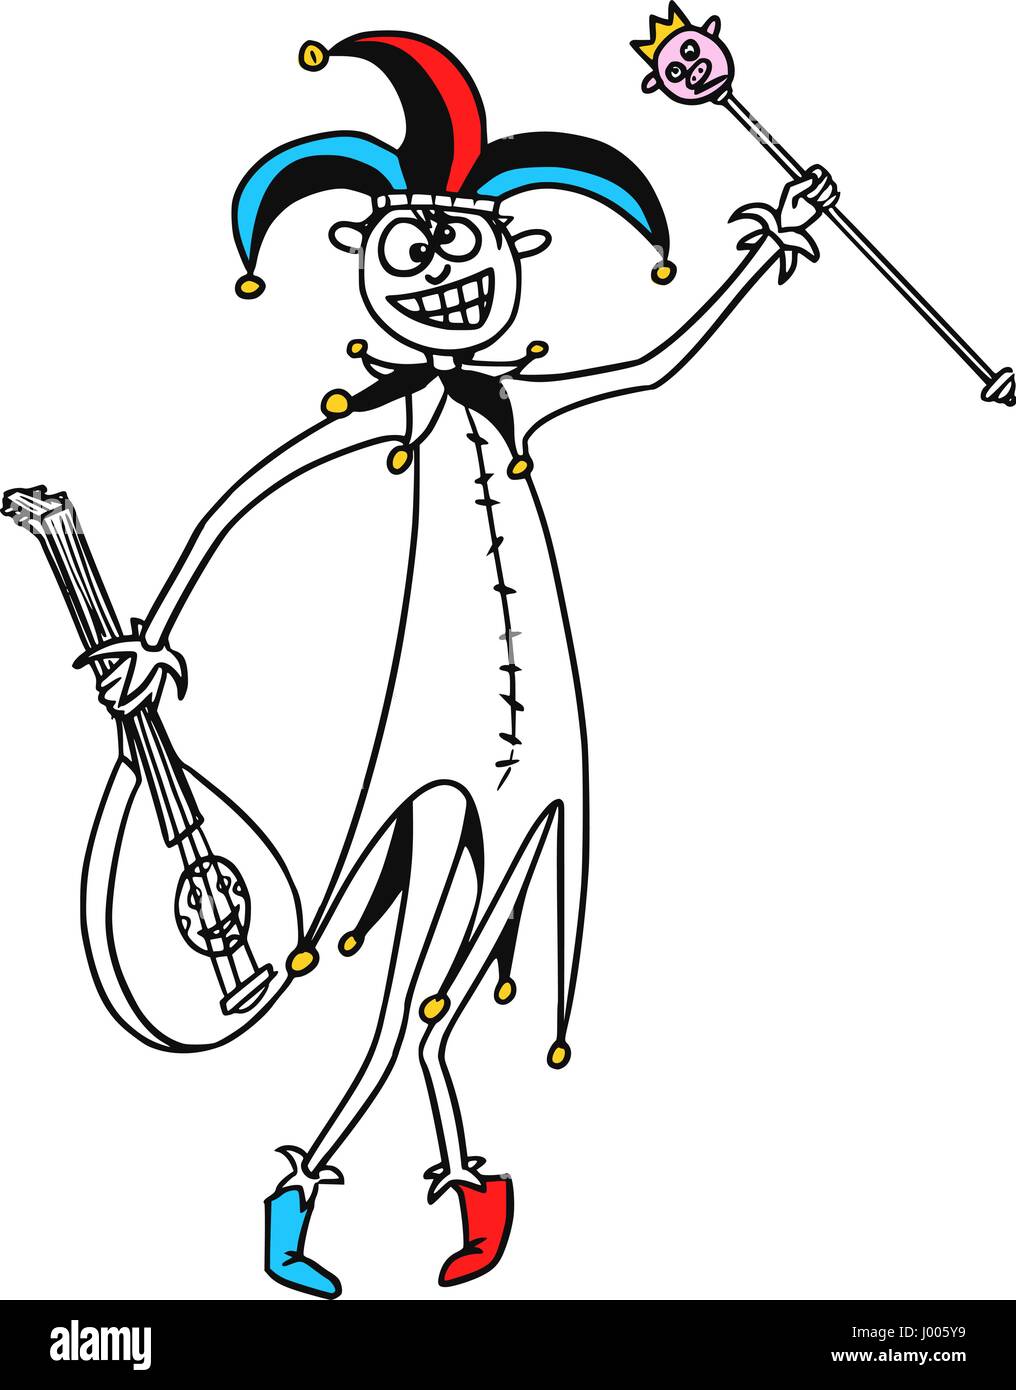 Cartoon Vektor Fantasie mittelalterlicher Narr Narr Clown Clown mit Hut, Zepter und Zither oder Gitarre Stock Vektor